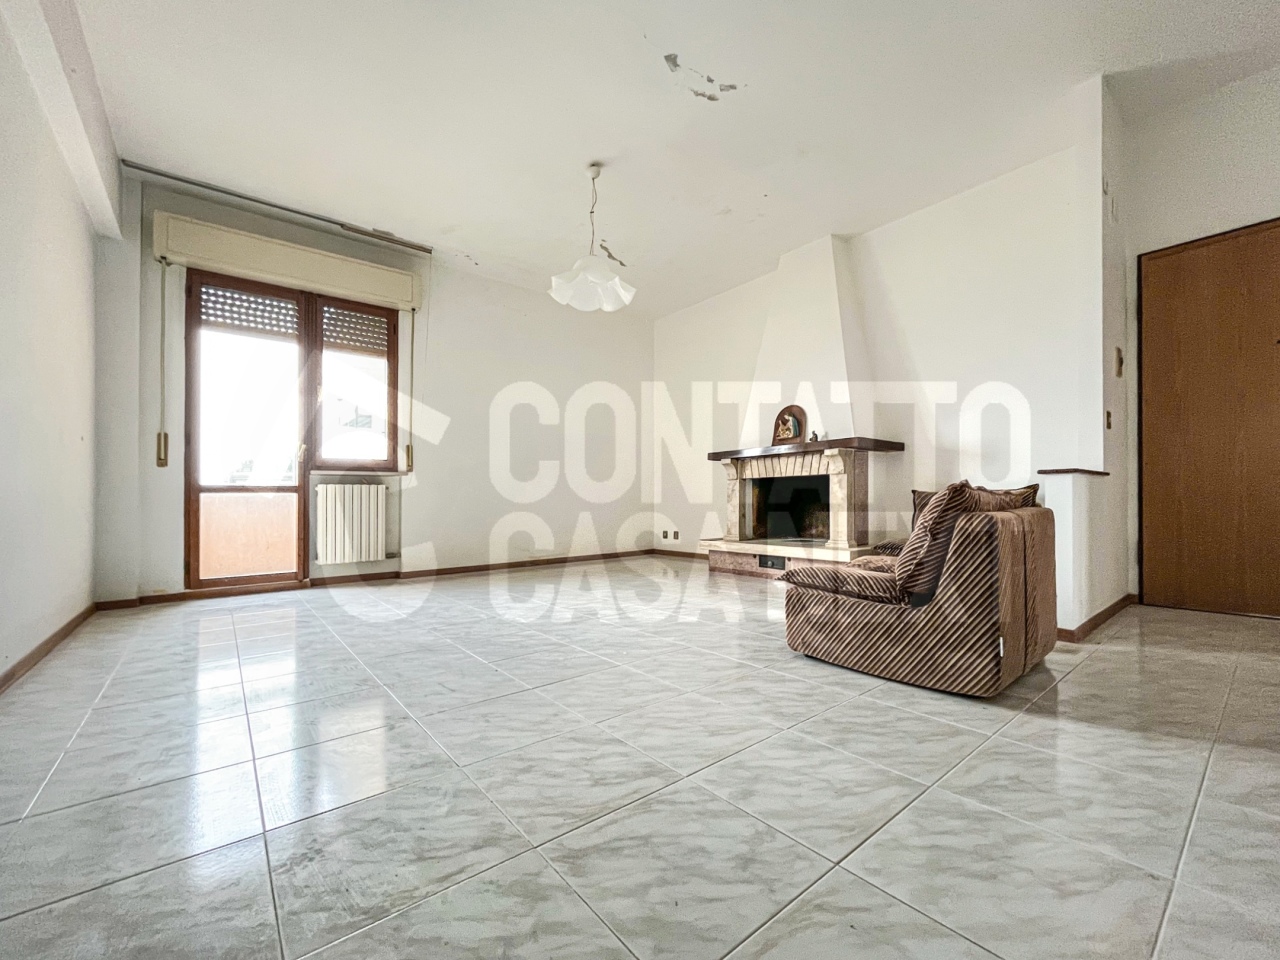 Appartamento in vendita a Monte Roberto, 4 locali, prezzo € 50.000 | PortaleAgenzieImmobiliari.it